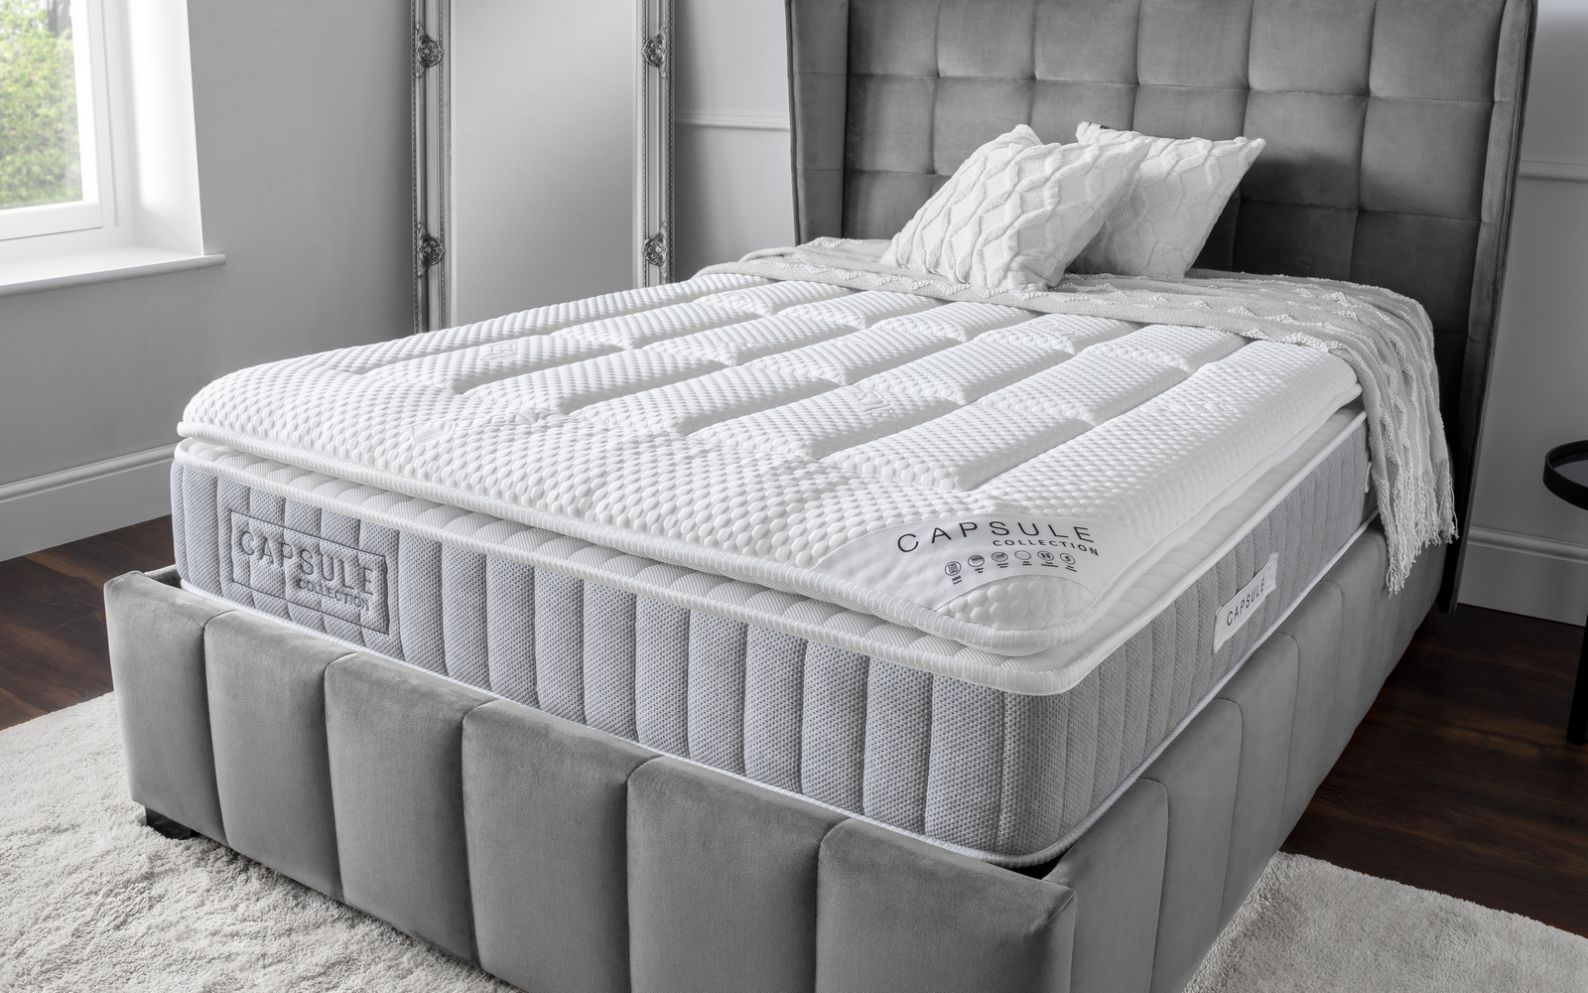 3000 pillow top spring mattress